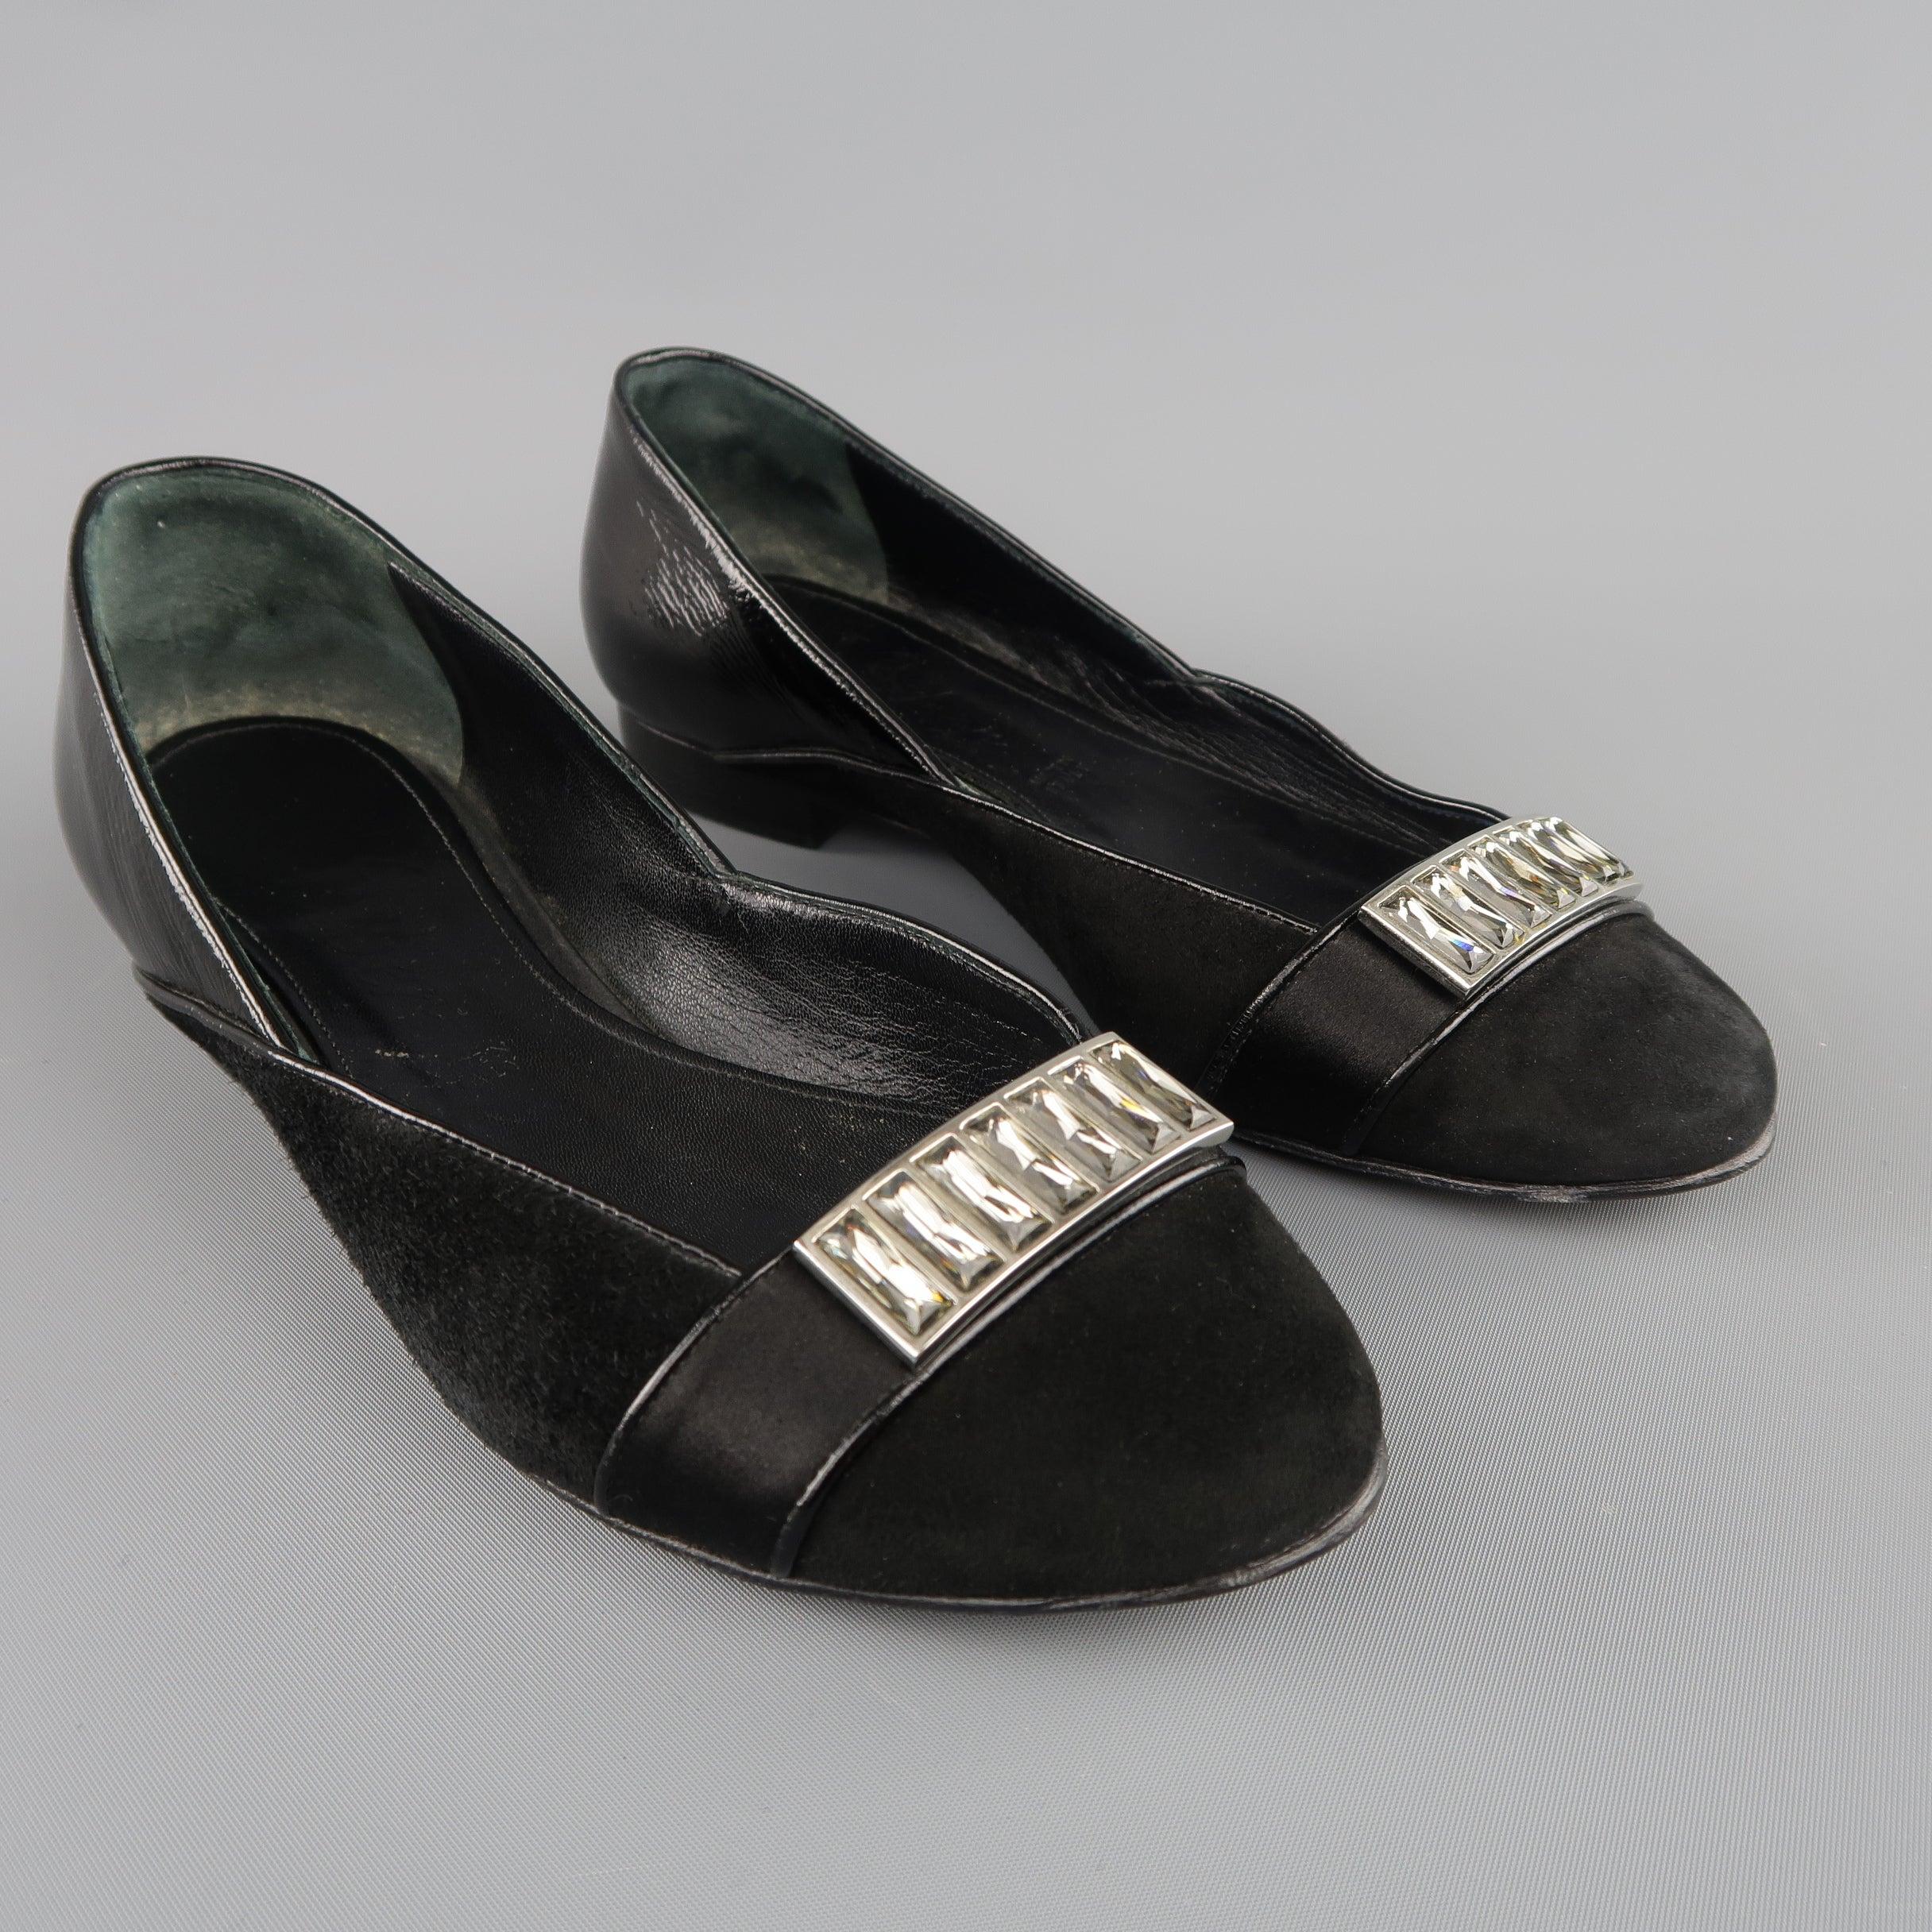 Die flachen Schuhe von JUDITH LEIBER sind aus schwarzem Veloursleder gefertigt und verfügen über einen Absatz aus Lackleder und ein Satinband mit Strassbroschen-Applikation. Hergestellt in Italien.
Guter Pre-Owned Zustand.
 

Markiert:   5